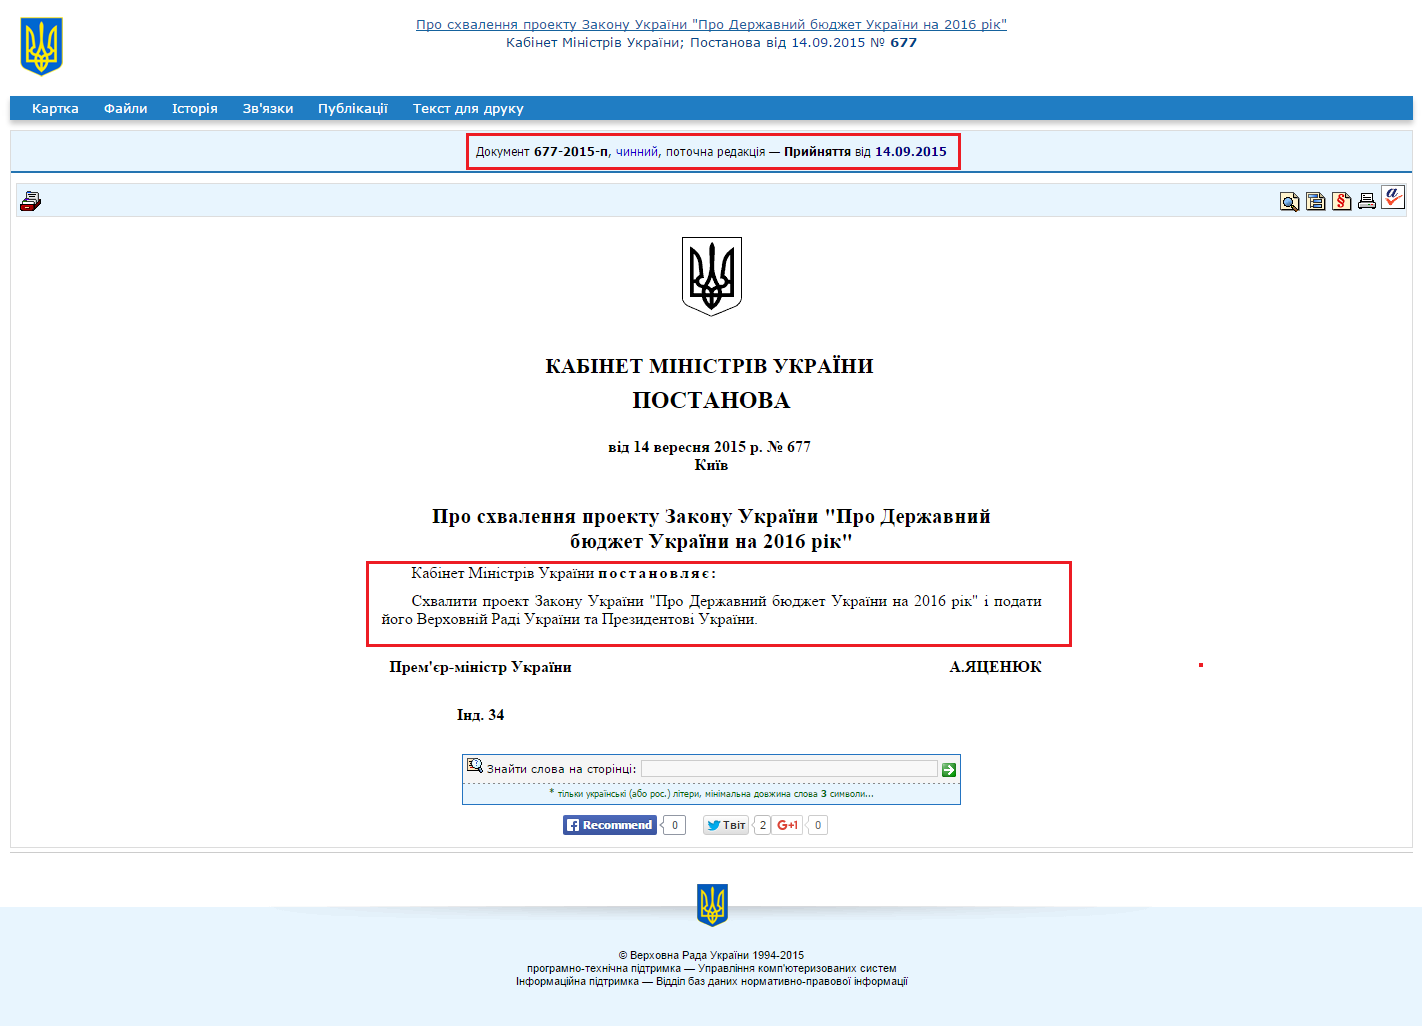 http://zakon5.rada.gov.ua/laws/show/677-2015-%D0%BF